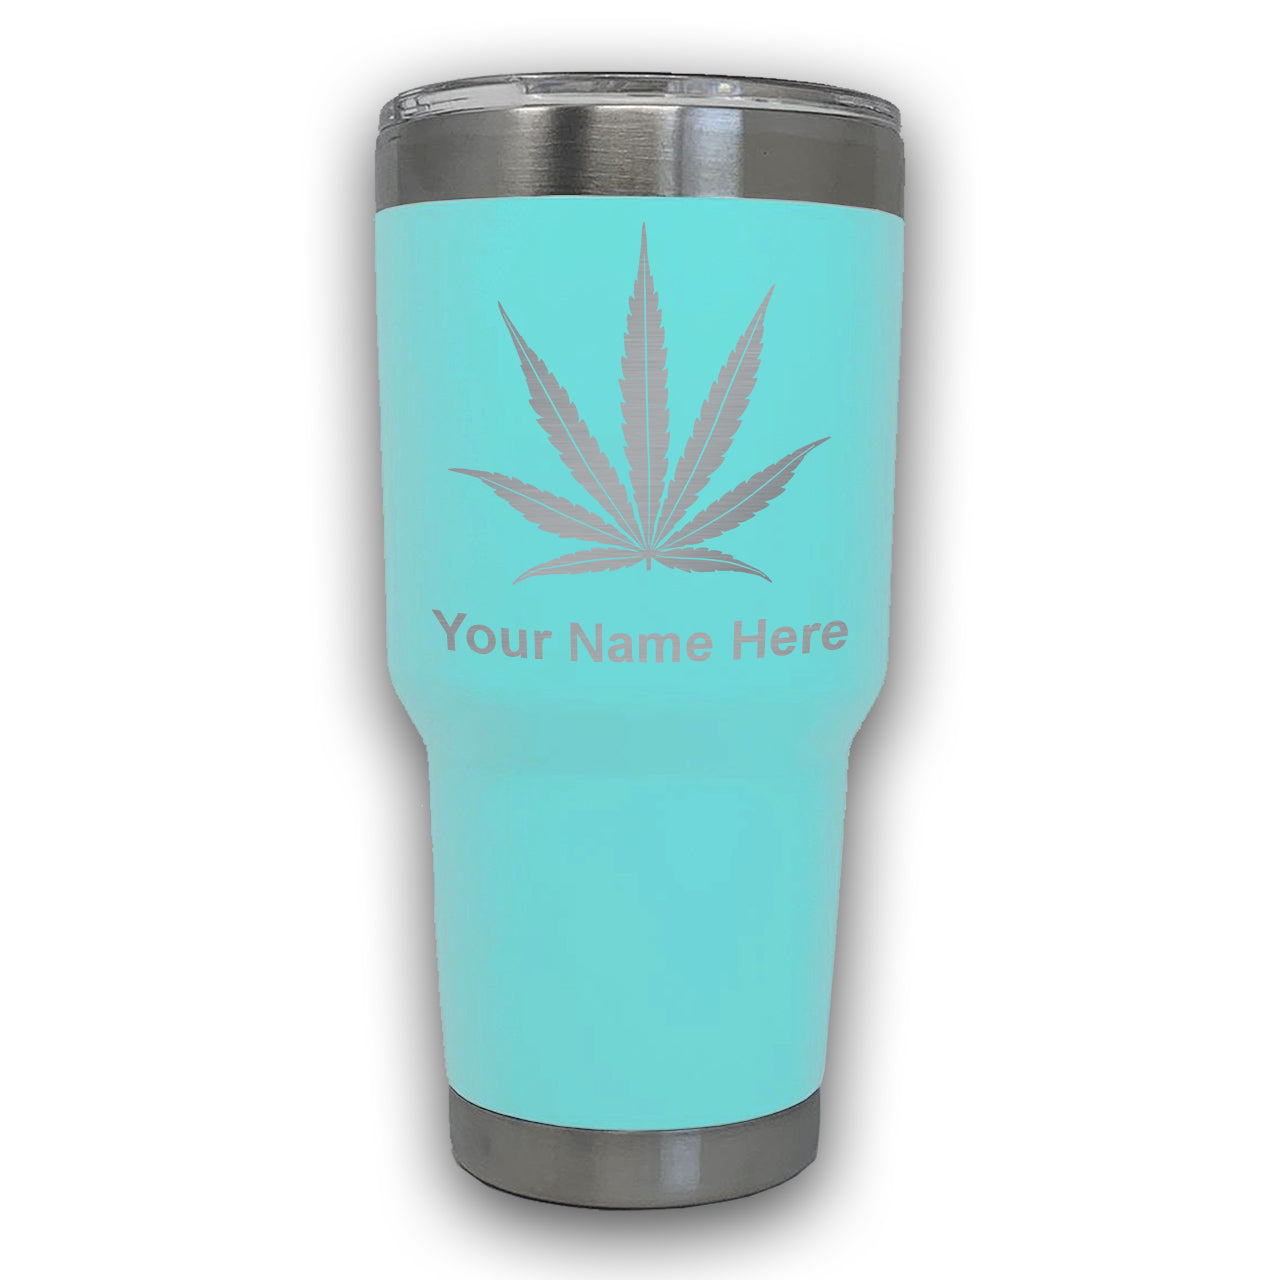 LaserGram 30oz Tumbler Mug, Marijuana leaf, Personalized Engraving Included